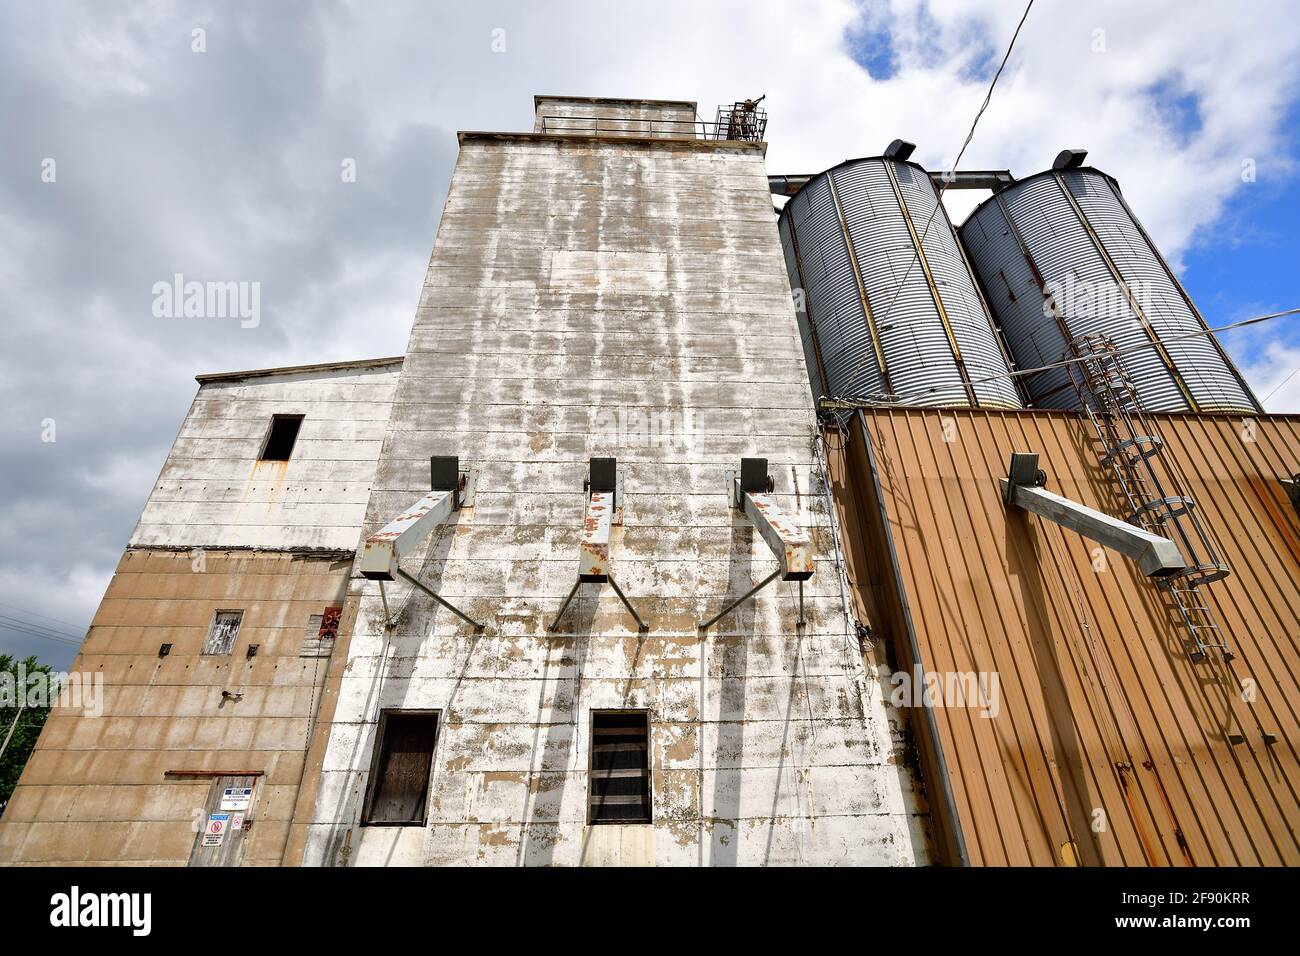 Ashton, Illinois, USA. Eine Vielzahl von Getreideaufzügen durchsetzt die Skyline einer Kleinstadt, die von der Landwirtschaft dominiert wird. Stockfoto